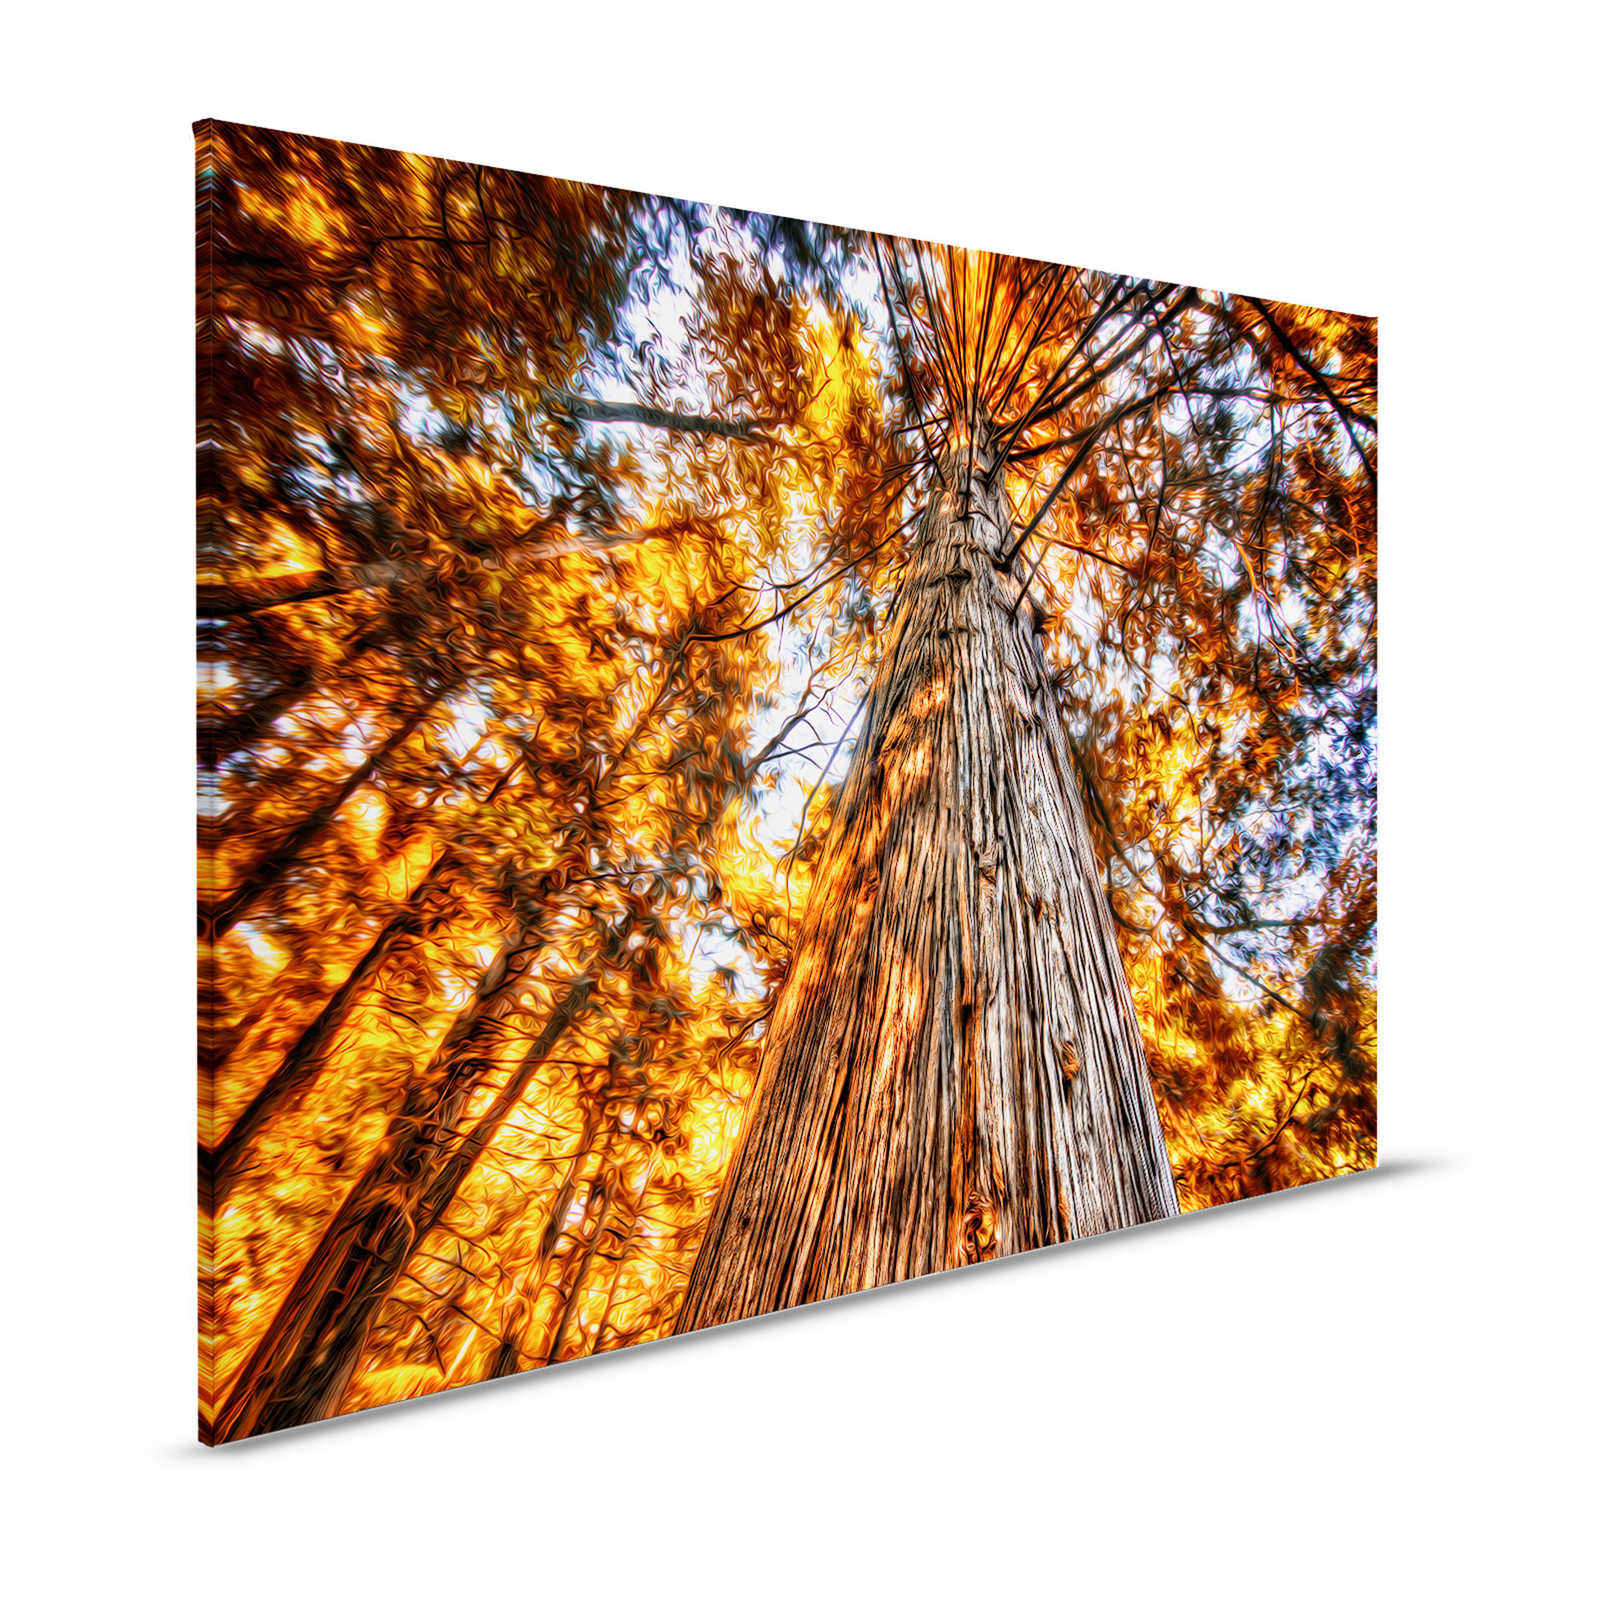 Tableau toile Vue de la cime d'un arbre aux couleurs incandescentes - 1,20 m x 0,80 m
